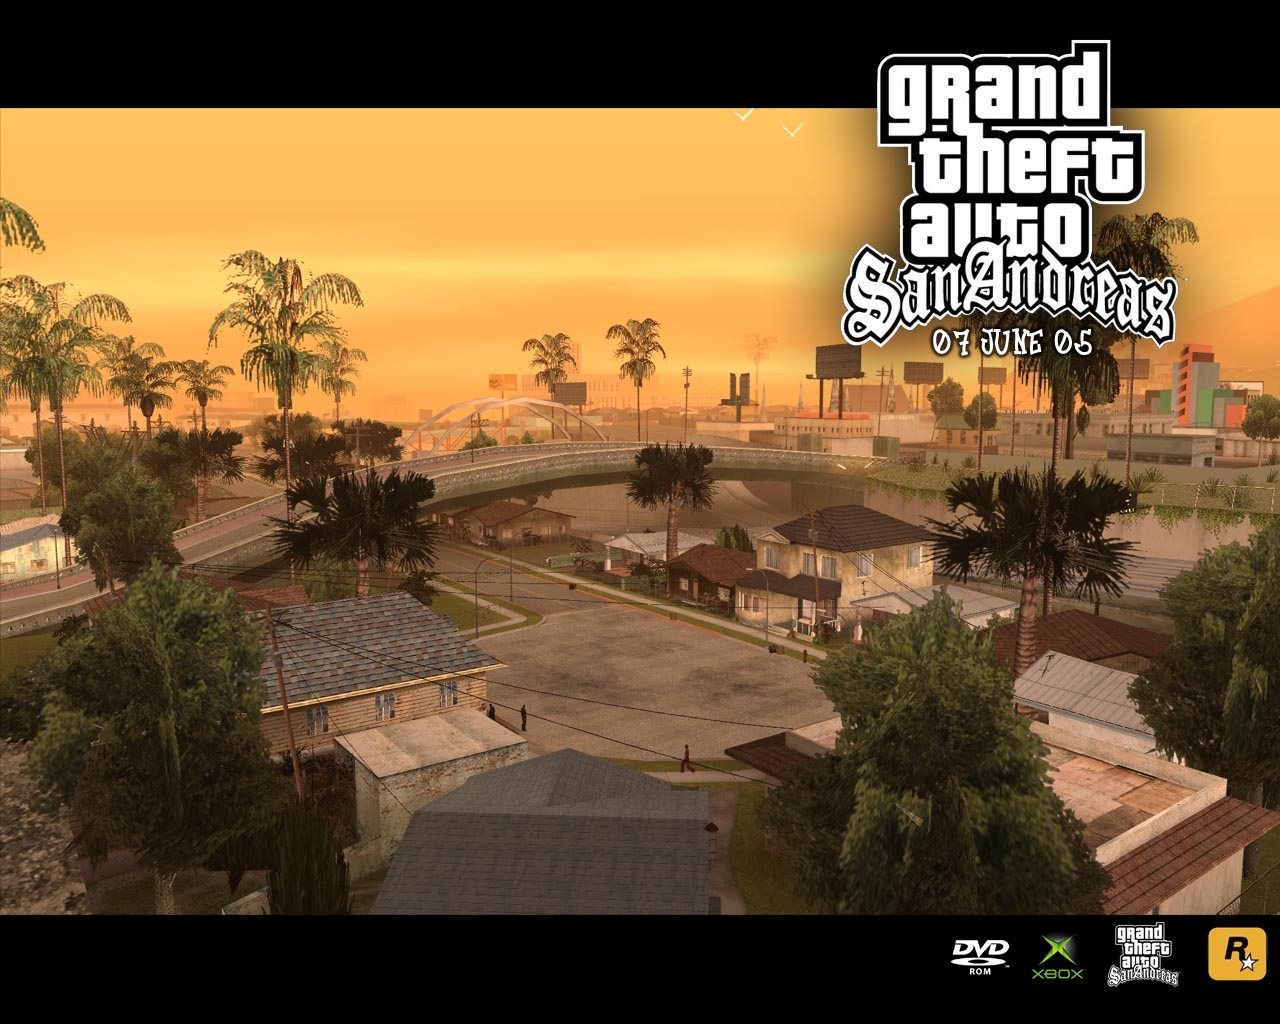 Gta San Andreas Grand Theft Auto Video Games Wallpaper Hq